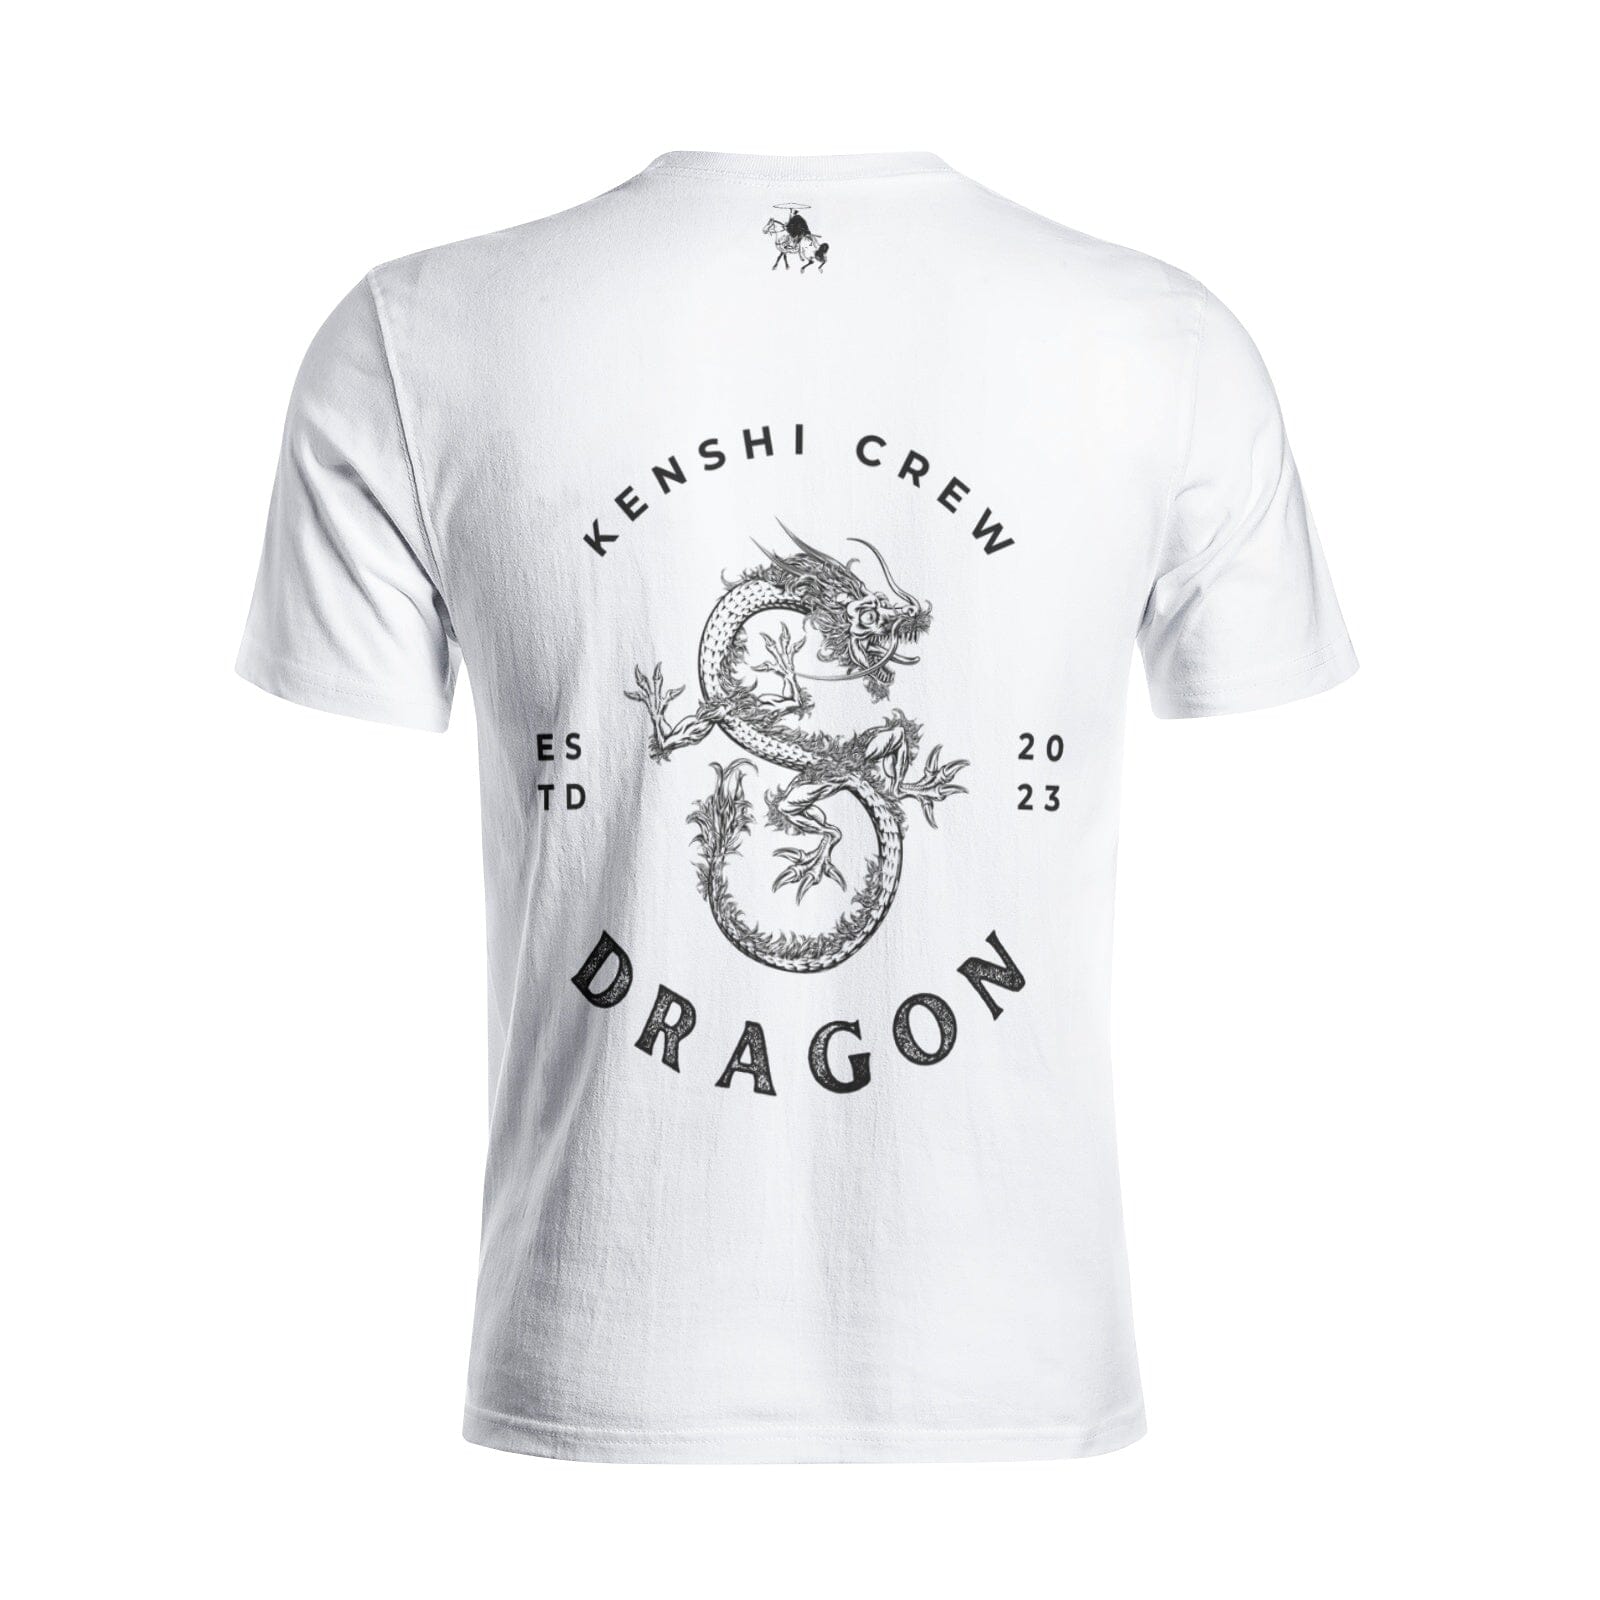 Japanese Dragon Shirt